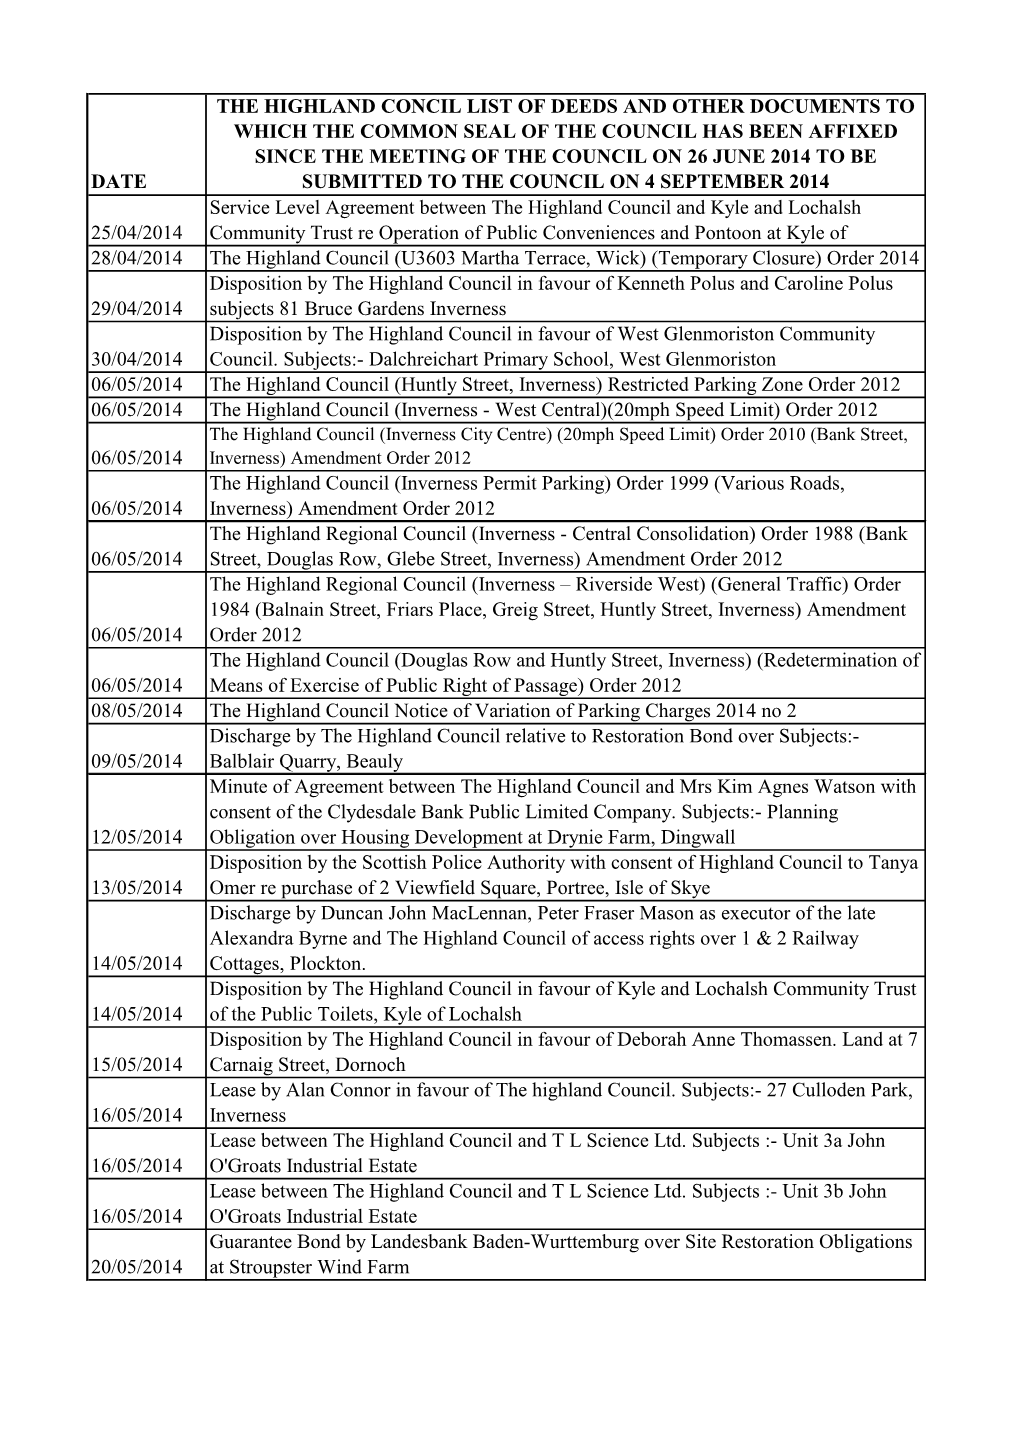 List of Deeds Since 26 June 2014